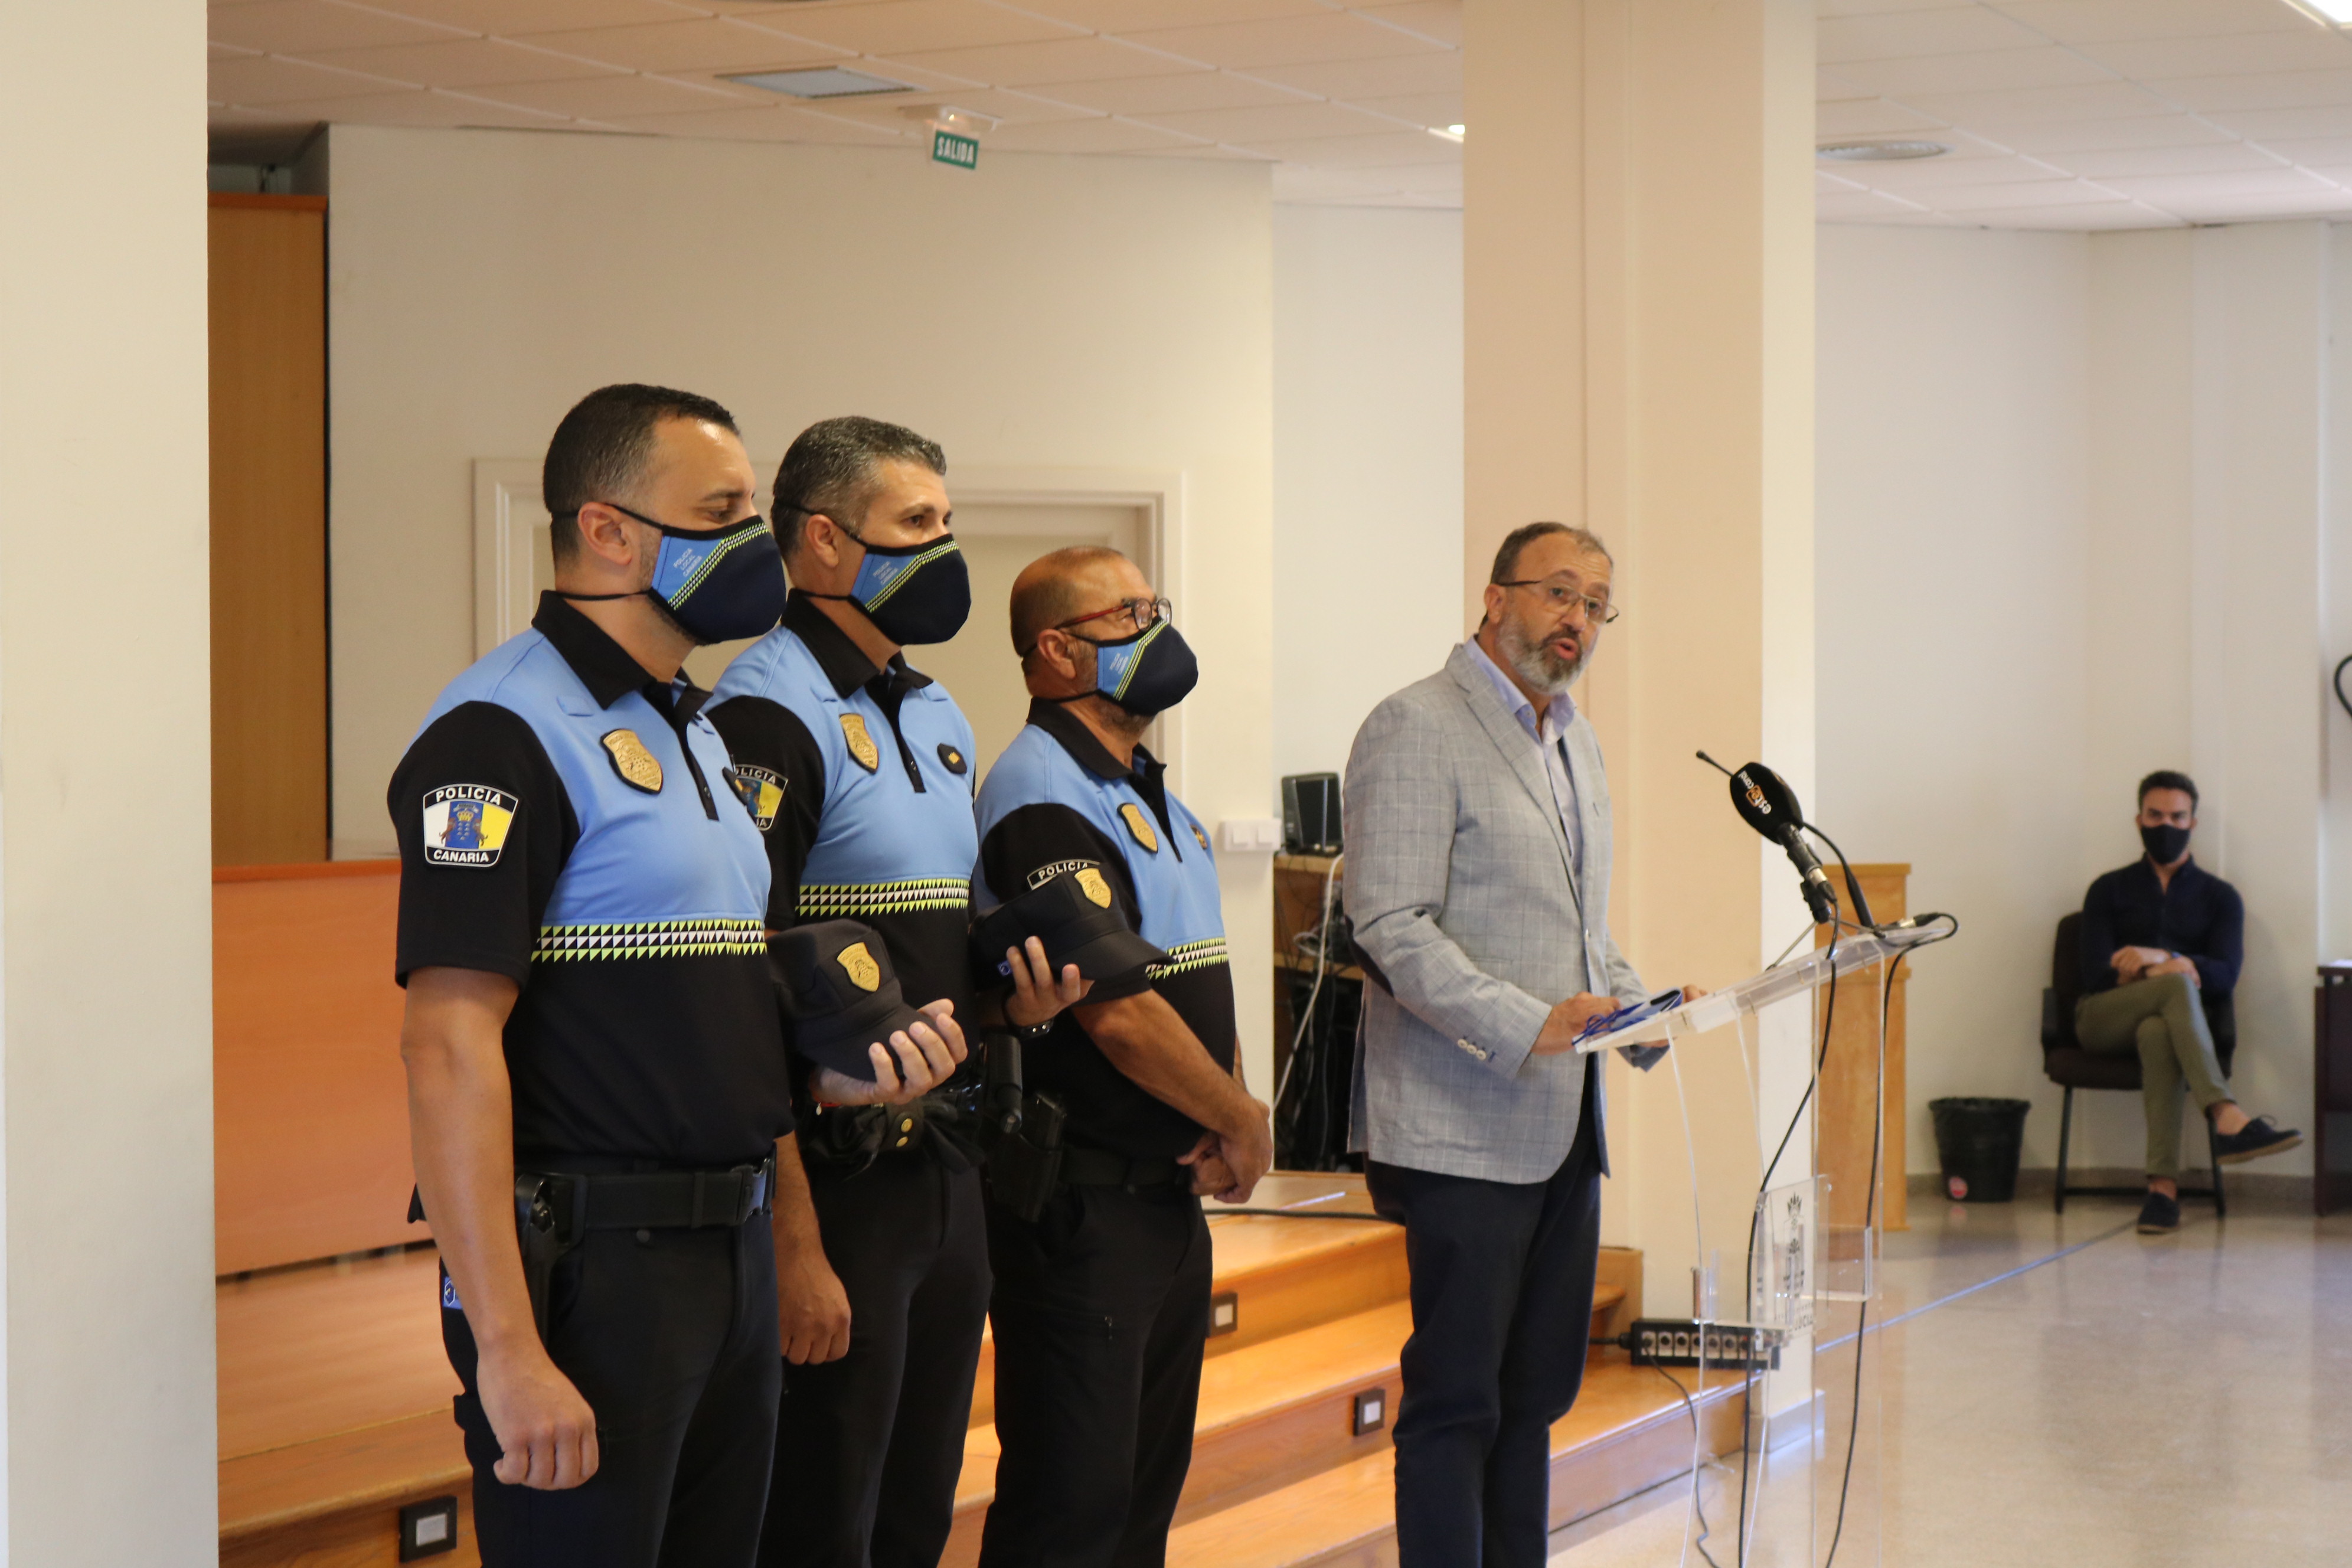  Óliver Almeida y Arturo Márquez nuevos oficiales de la Policía Local de Santa Lucía 